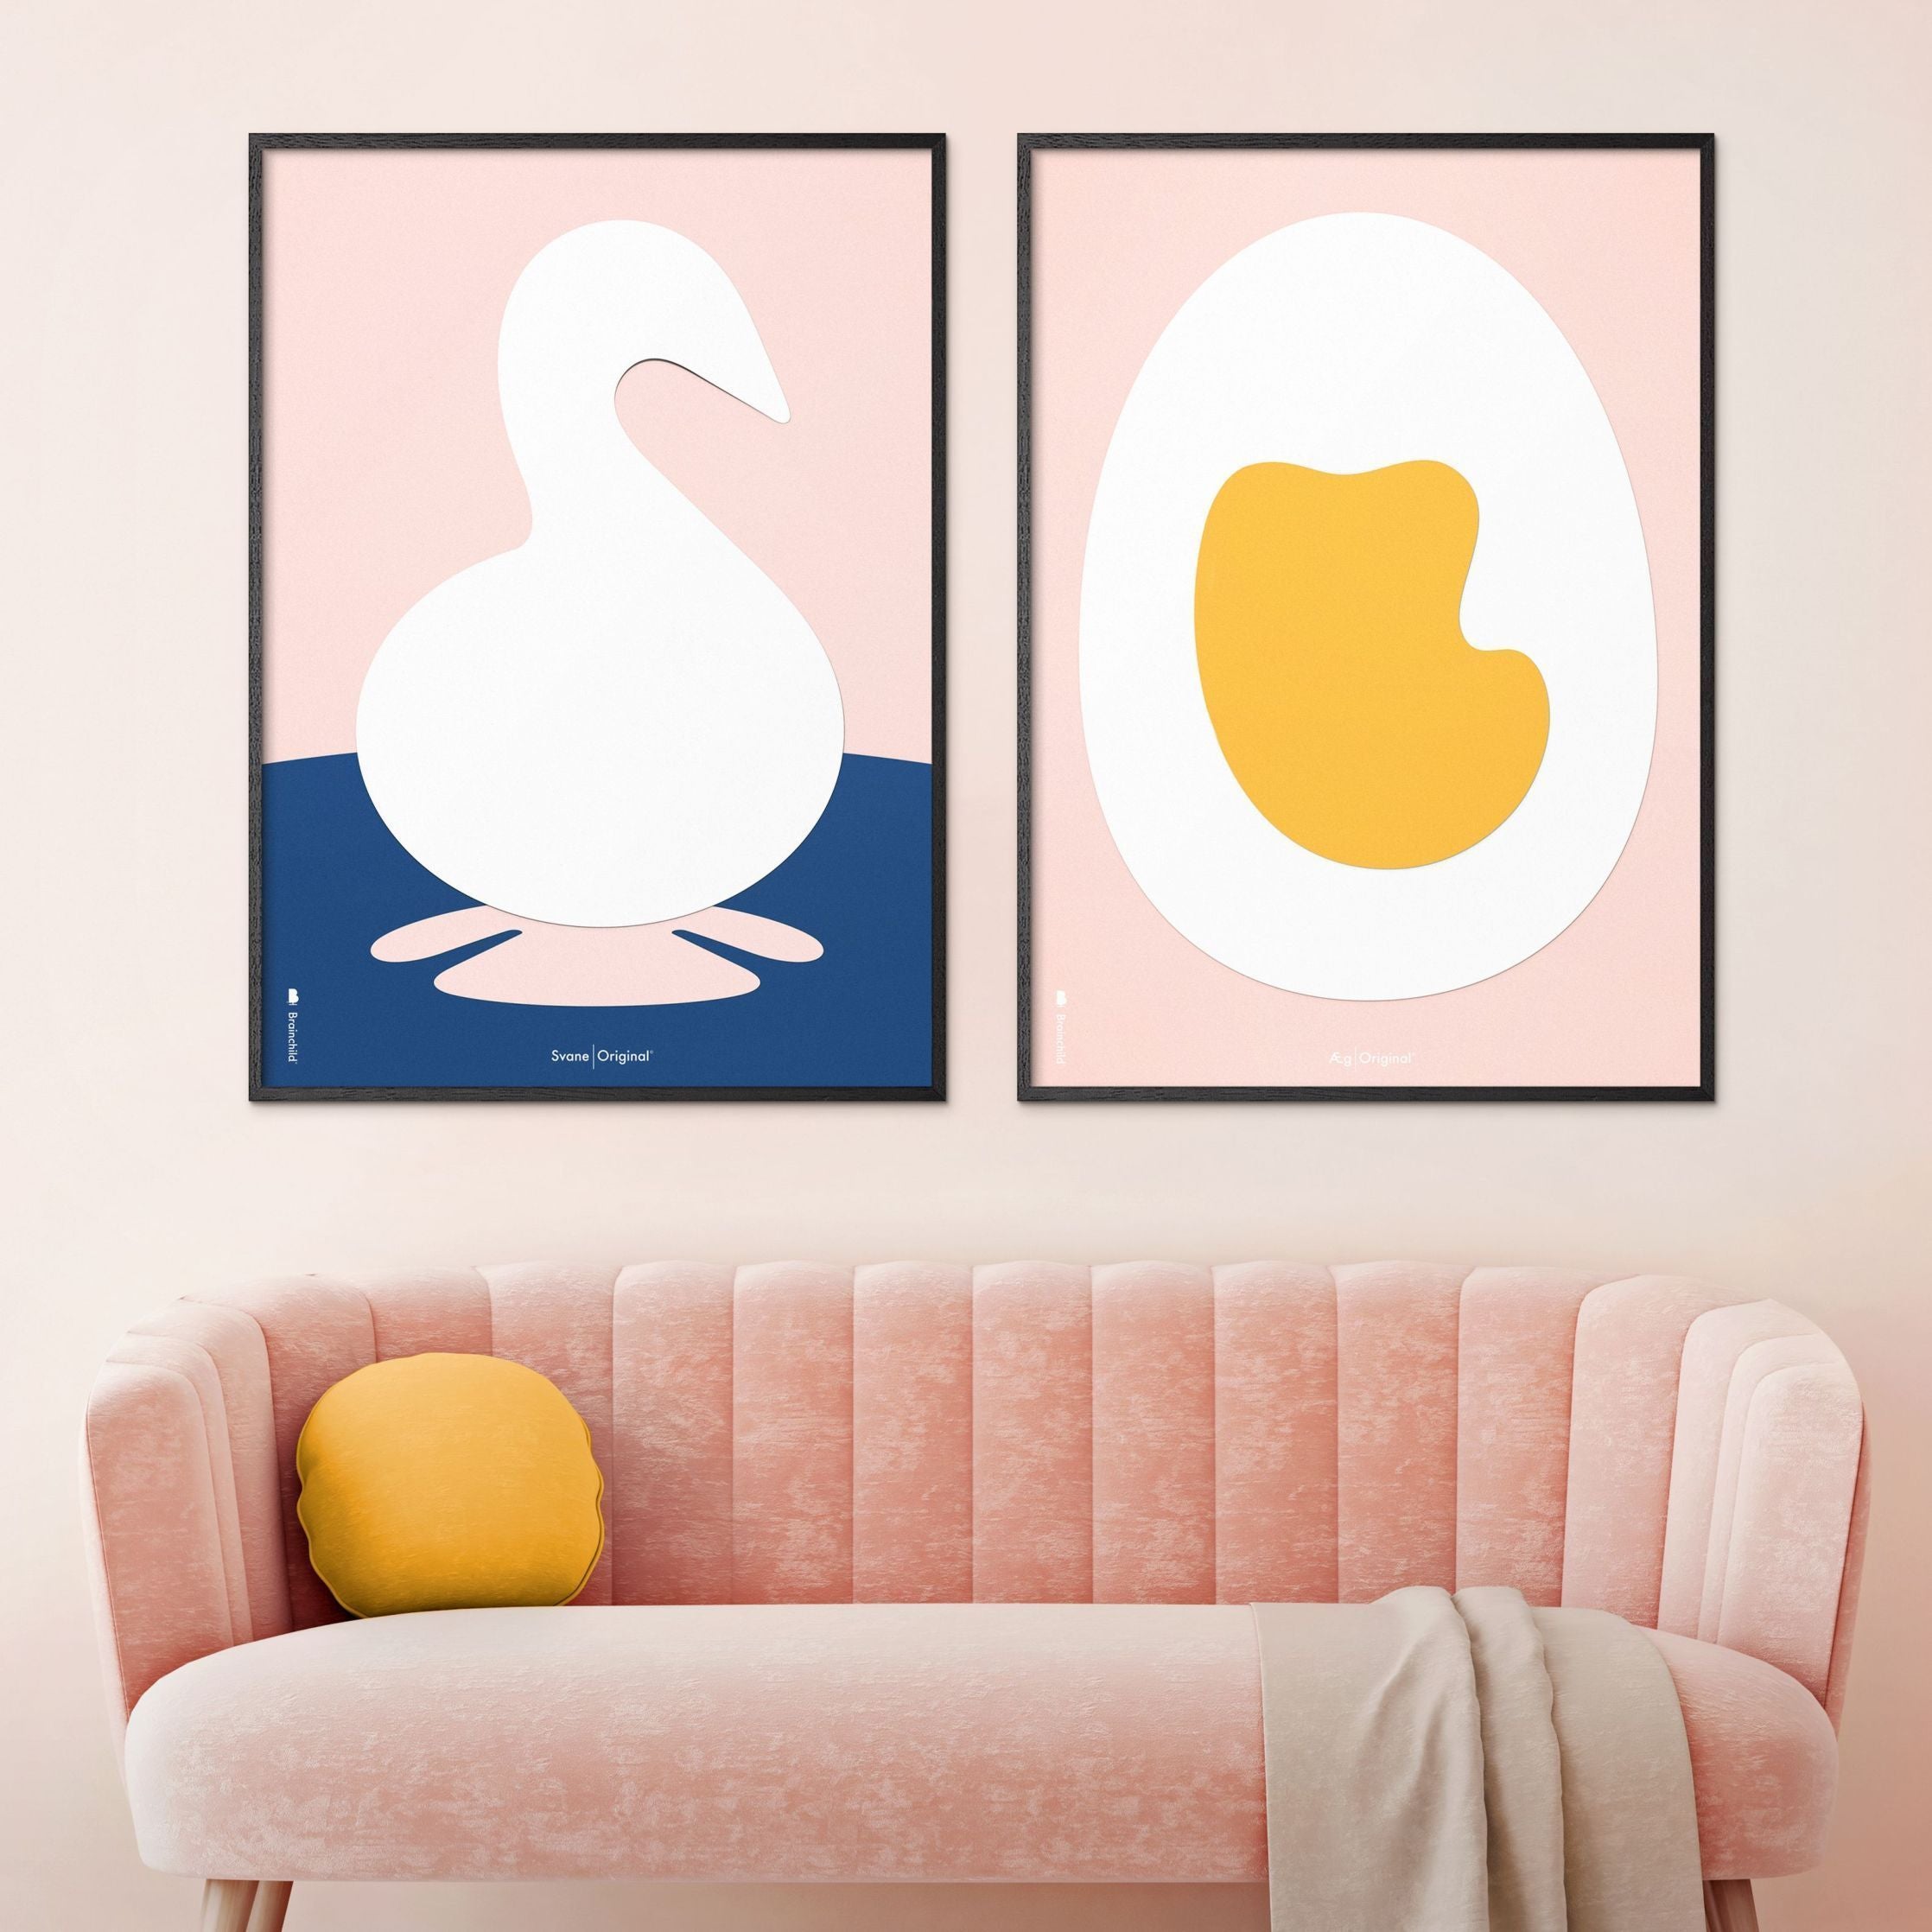 Plakát z vaječného papíru s vaječným papírem bez rámu 70 x100 cm, růžové pozadí